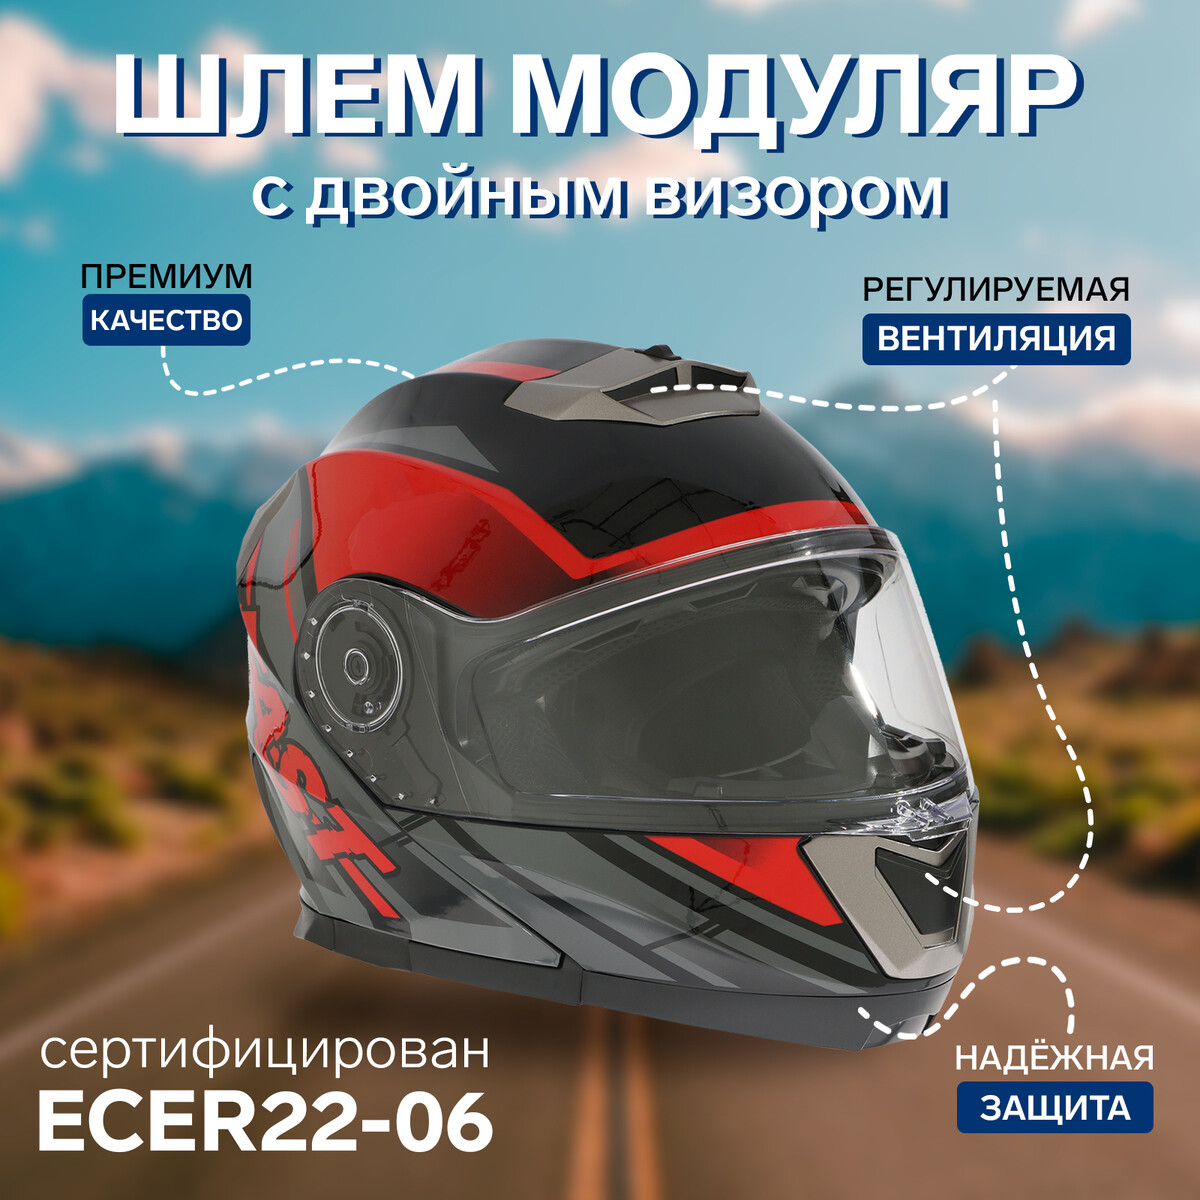 Шлем модуляр с двумя визорами, размер l (59-60), модель - bld-160e, черно-красный модель из картона кунсткамера